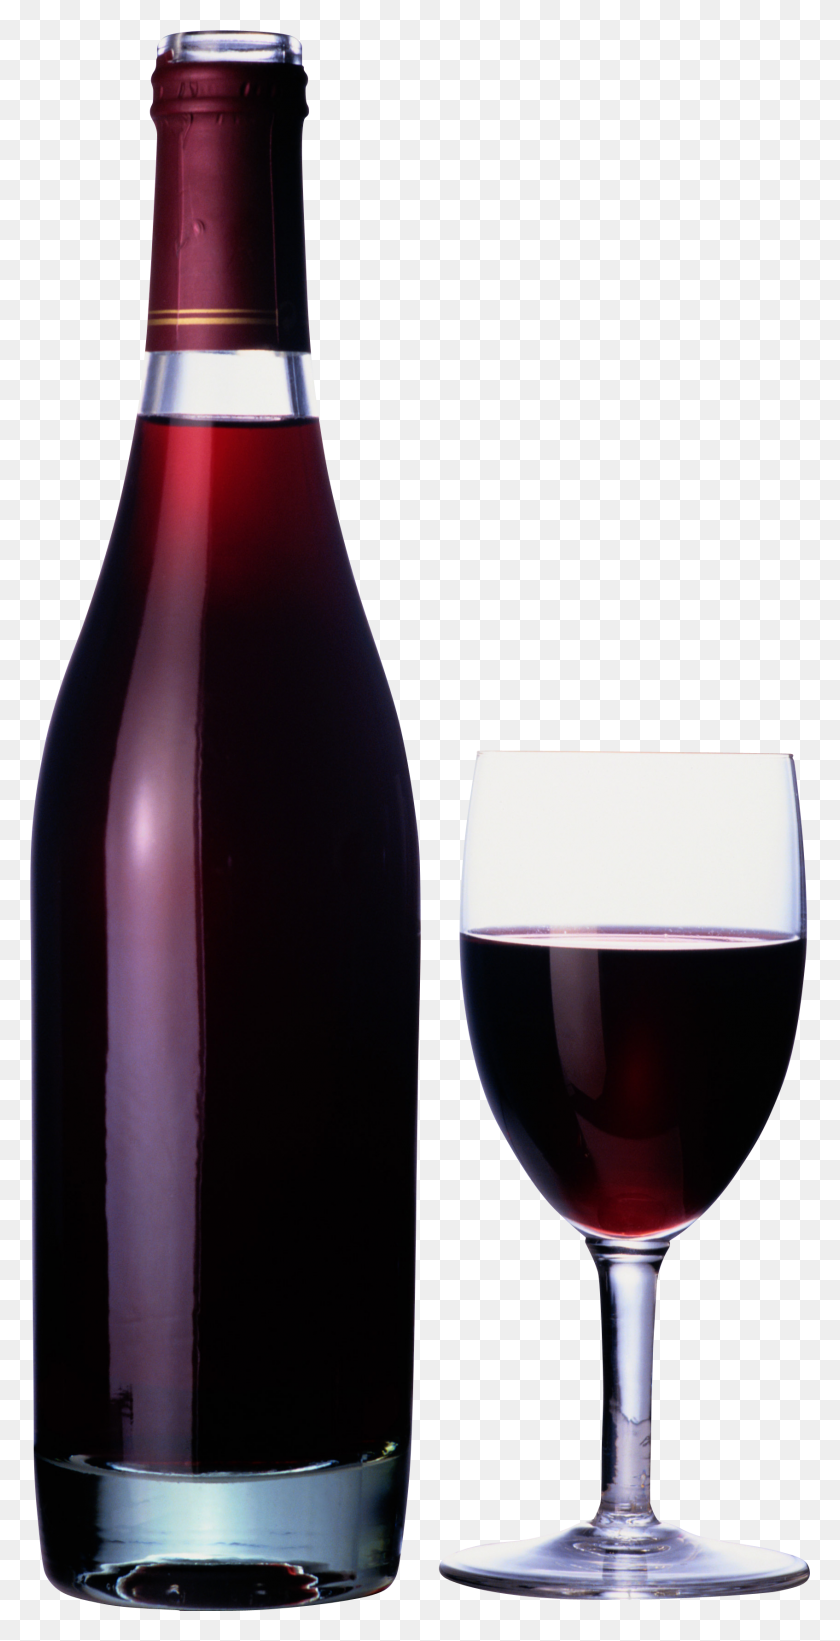 1694x3435 Картинки Вино - Бутылка Вина Клипарт Черный И Белый